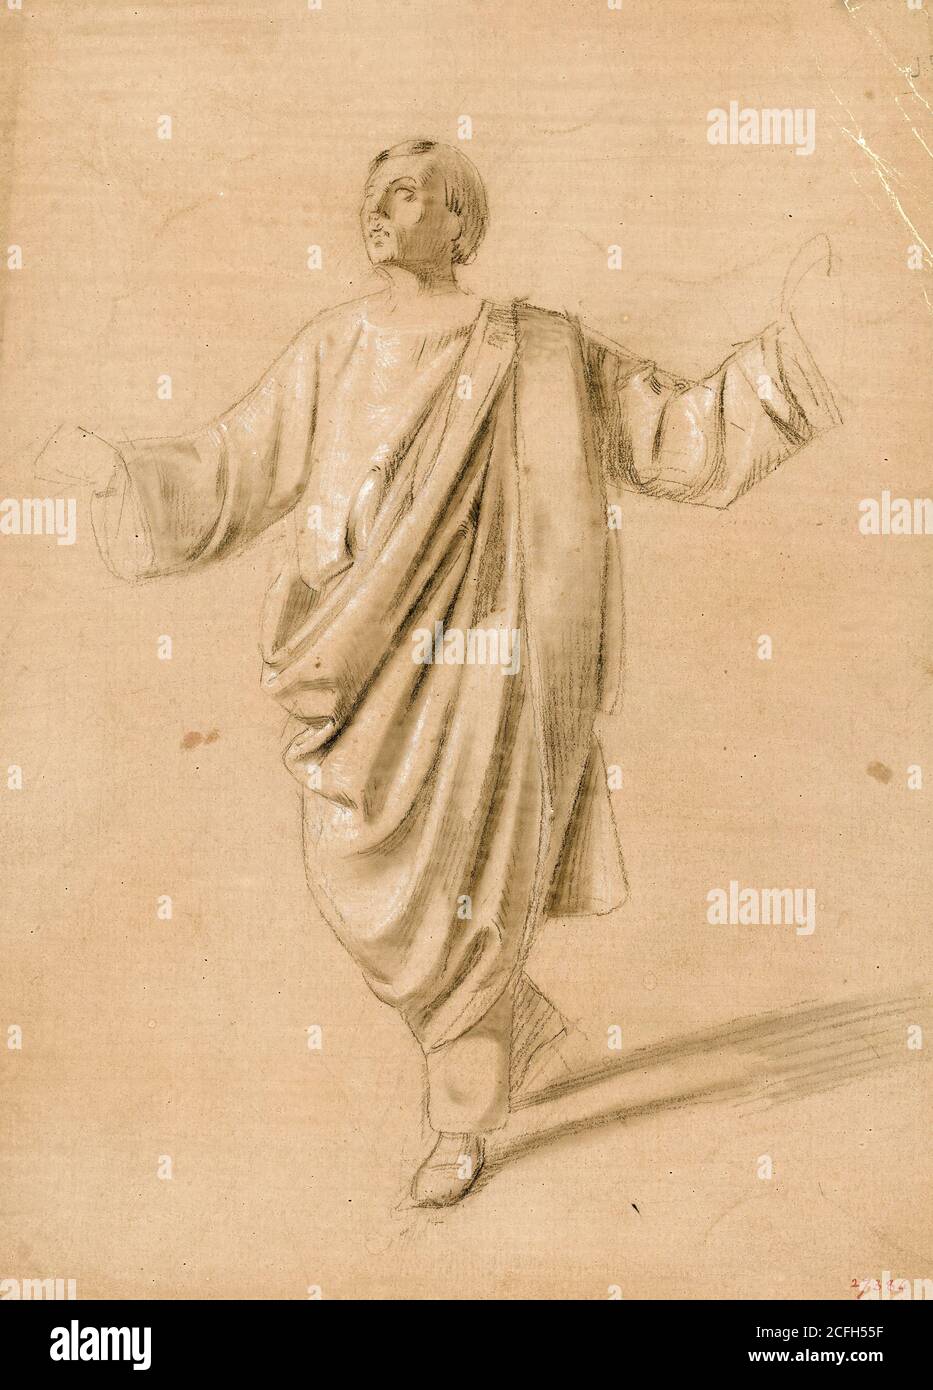 Maria Fortuny, Akademische Studie einer männlichen Figur, um 1856-1858, Bleistift und weißes Blei auf Papier, Museu Nacional d'Art de Catalunya, Barcelona, Spanien. Stockfoto